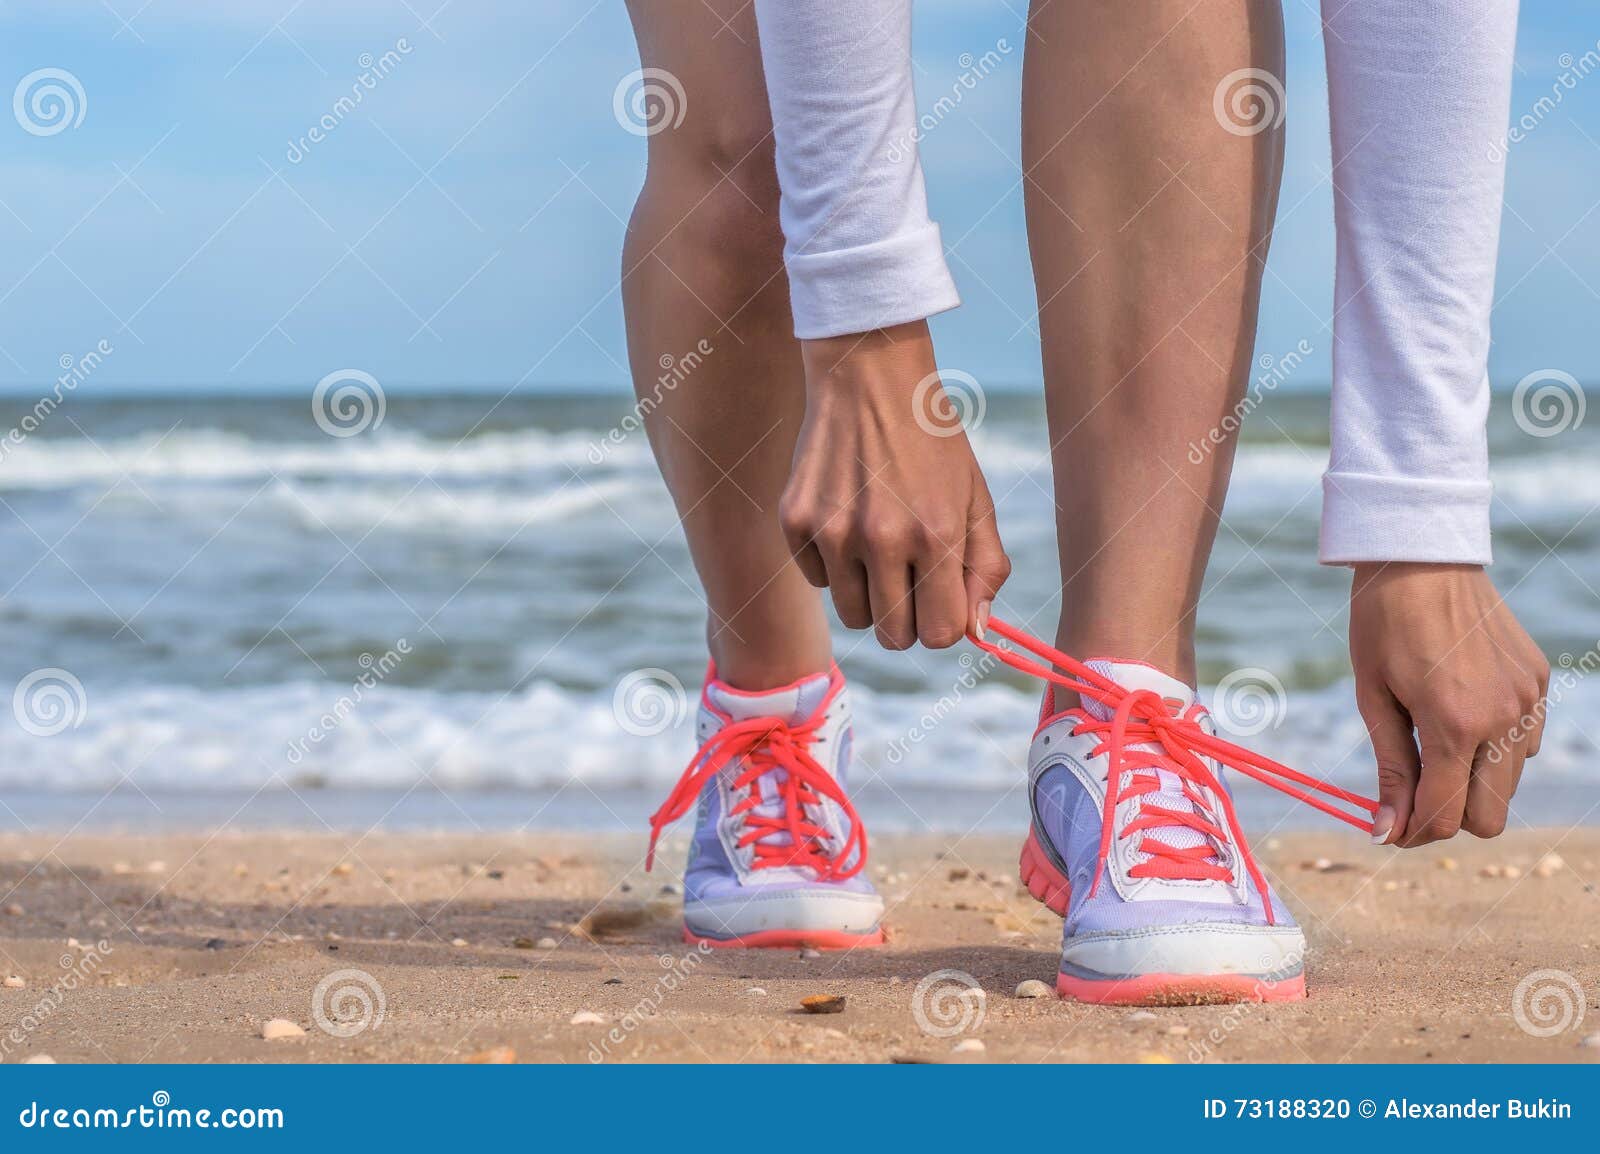 beach running shoes